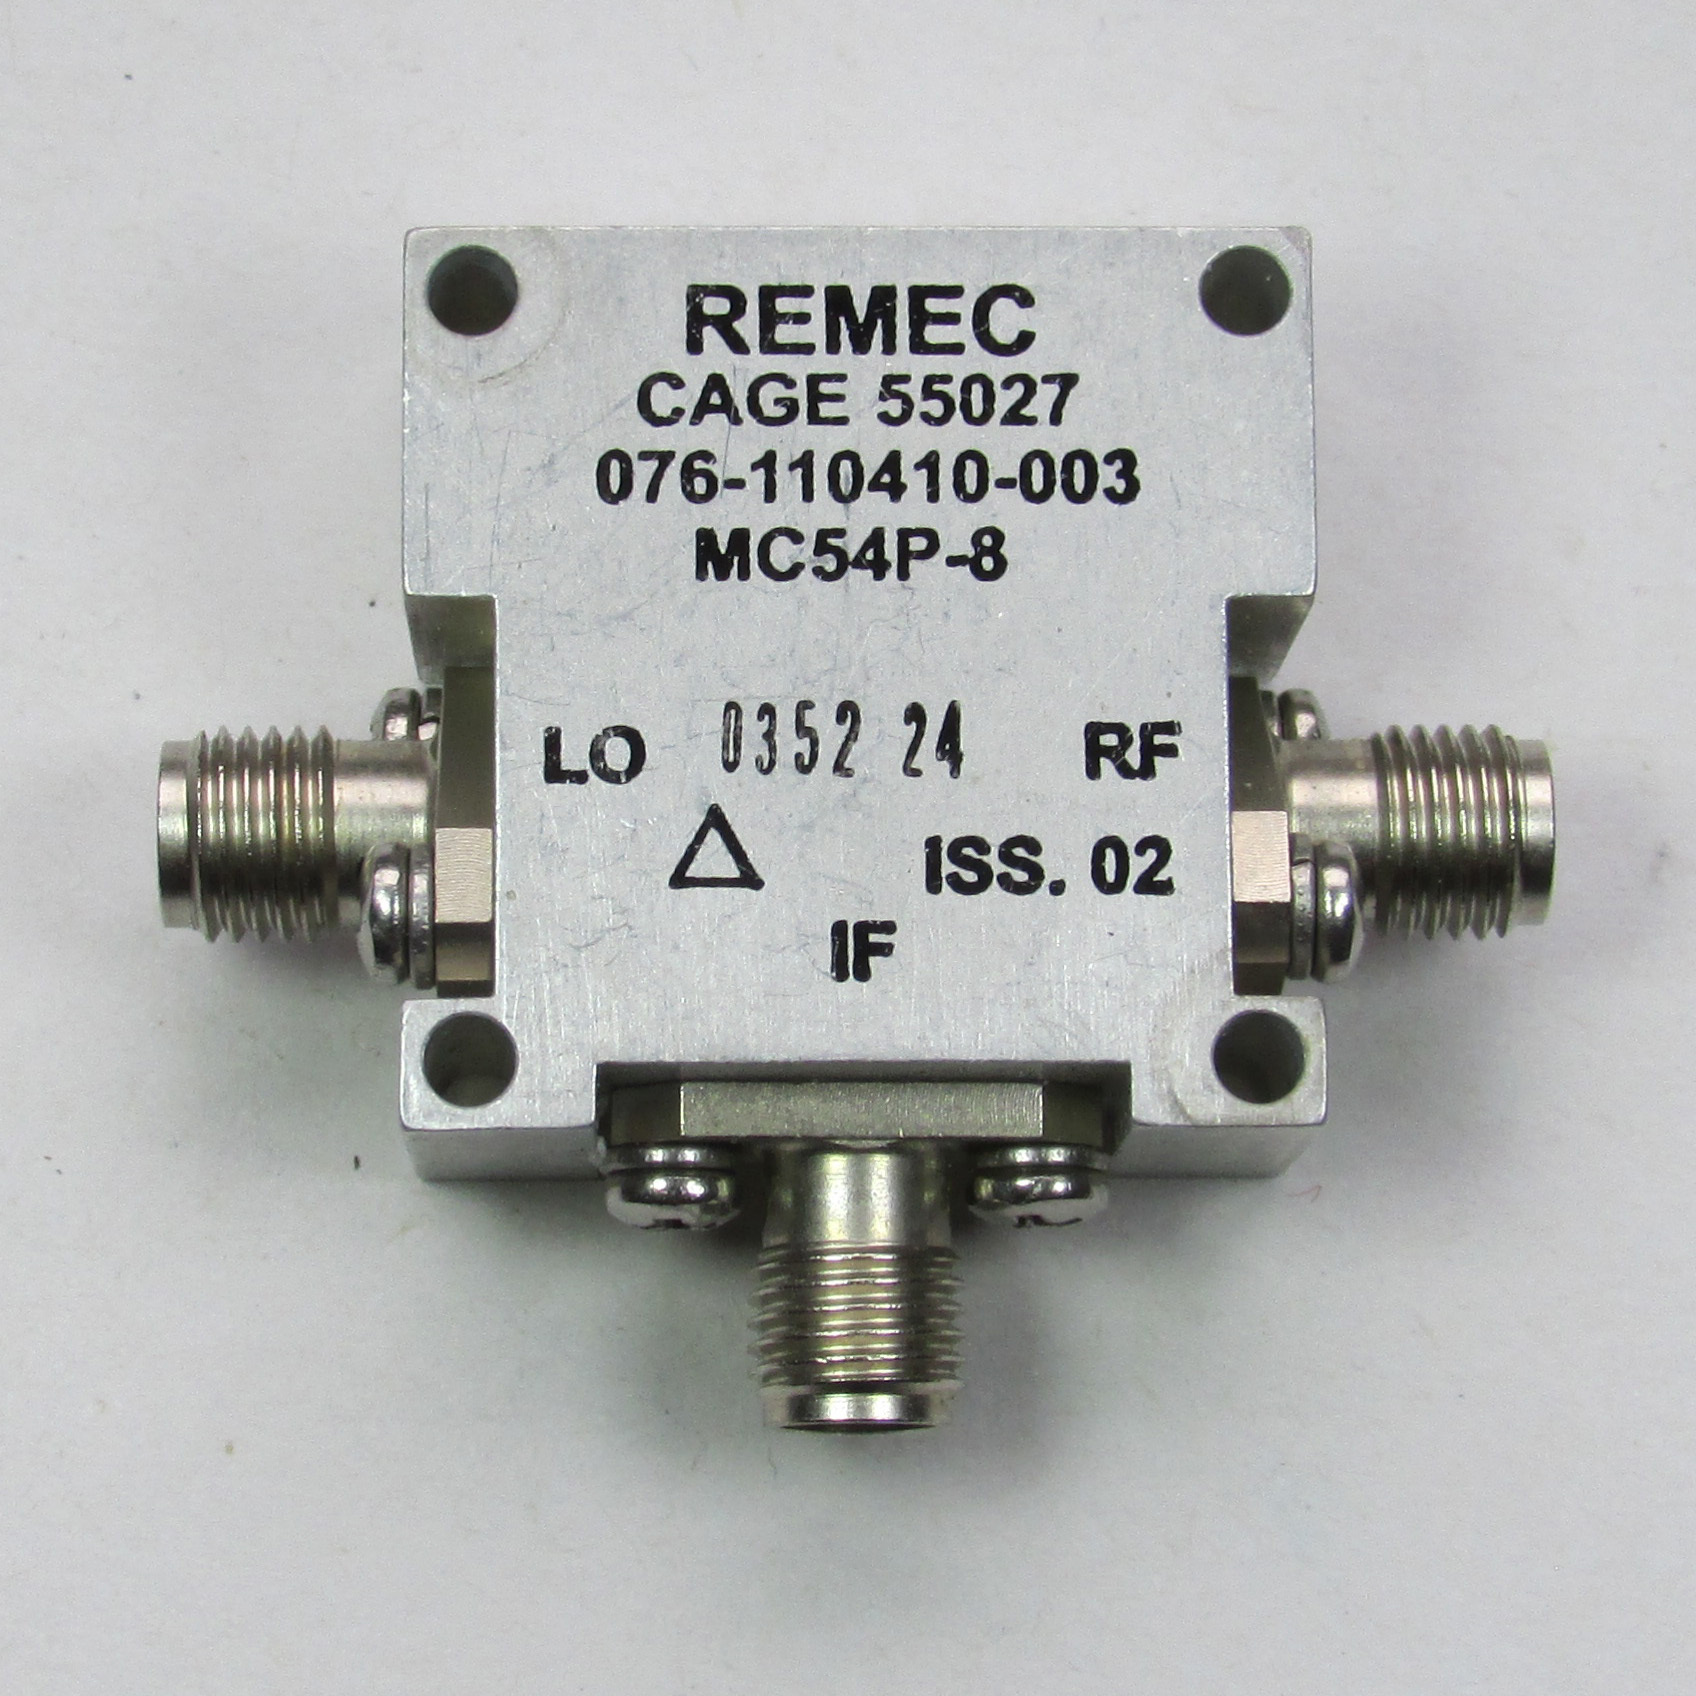 MC54P-8 3.5-12GHz SMA RF Microwave Coaxial Mixer